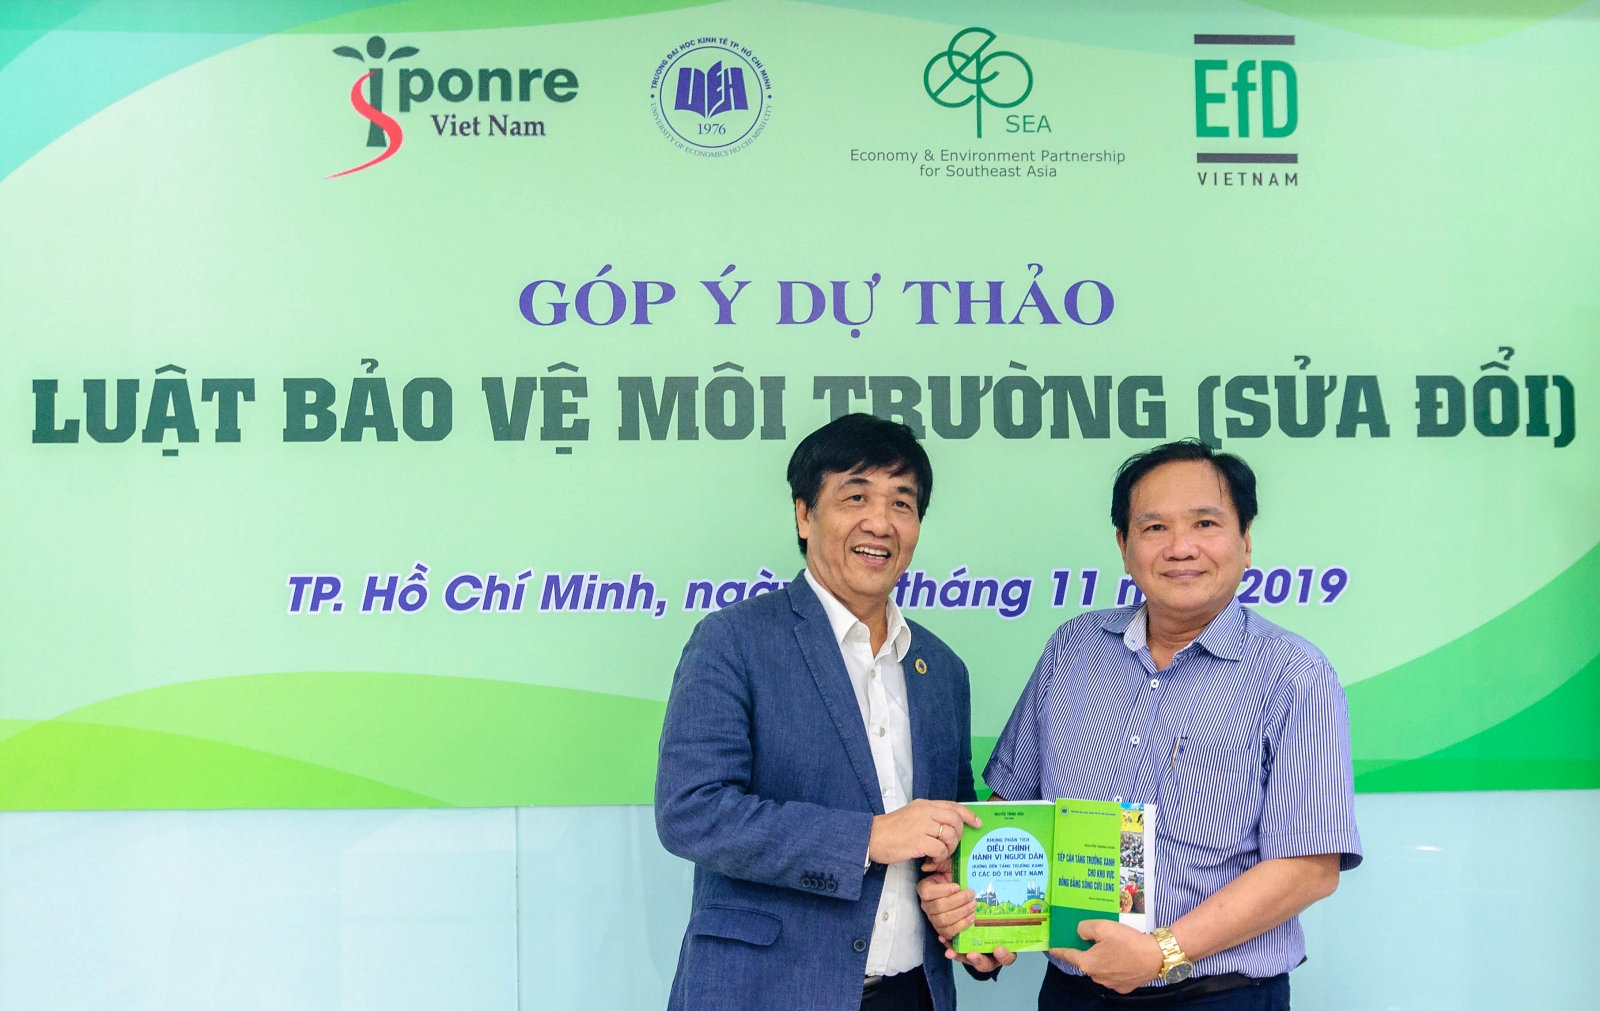 GS. TS. Nguyễn Trọng Hoài đại diện các nhà nghiên cứu và tư vấn chính sách trao tặng các ấn phẩm nghiên cứu tổng hợp liên quan đến chiến lược tăng trưởng xanh cũng như sử dụng công cụ kinh tế để quản lý tài nguyên và môi trường ở Việt Nam.